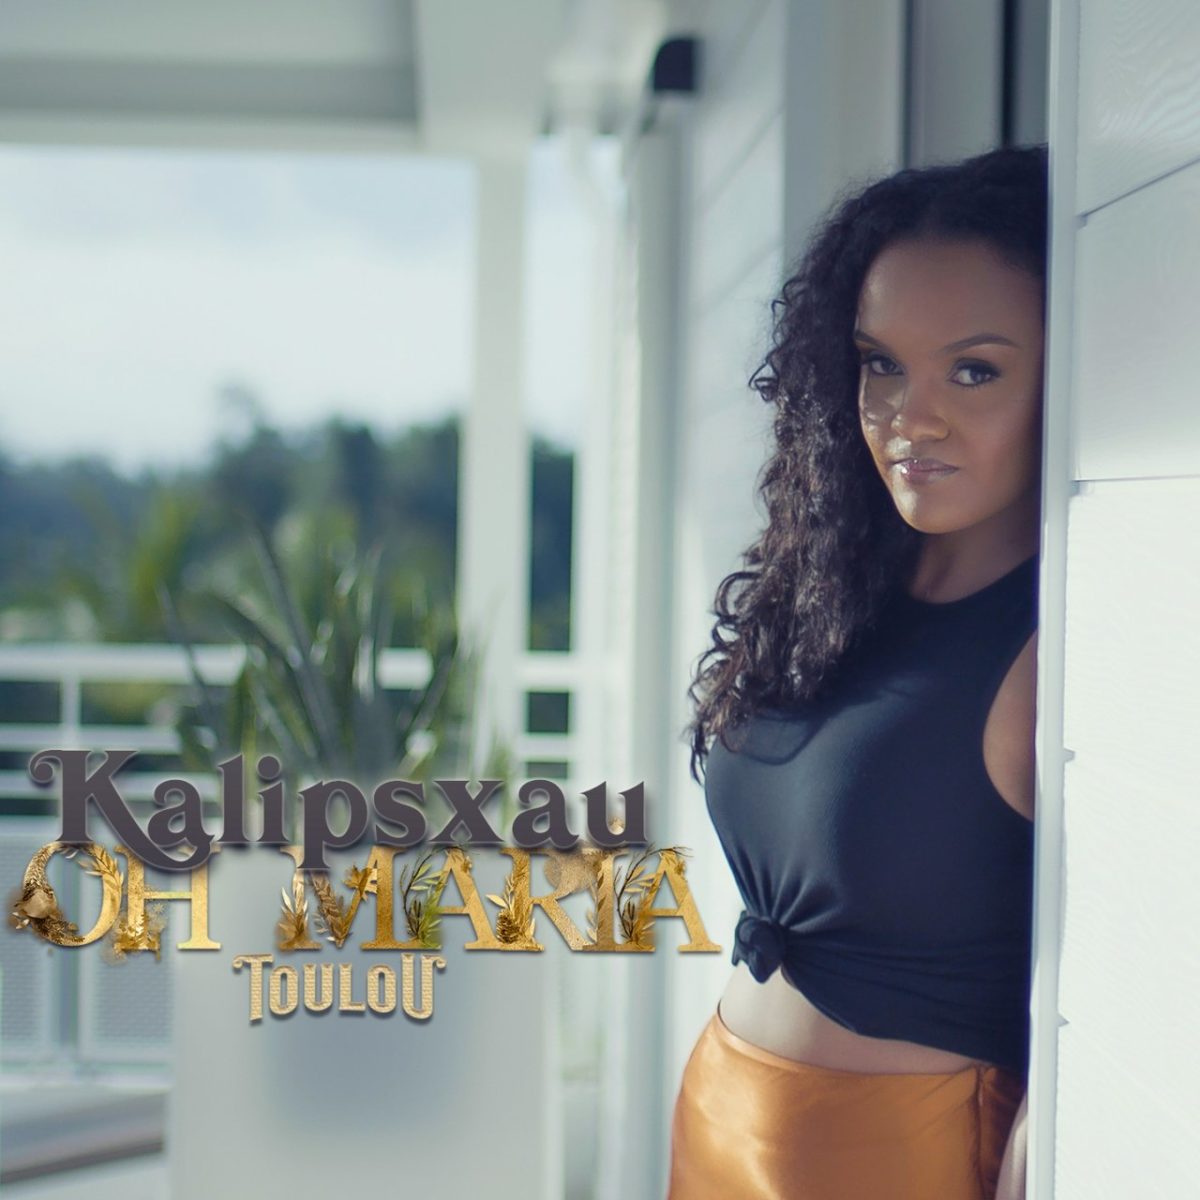 Kalipsxau - Oh Maria Toulou (Cover)